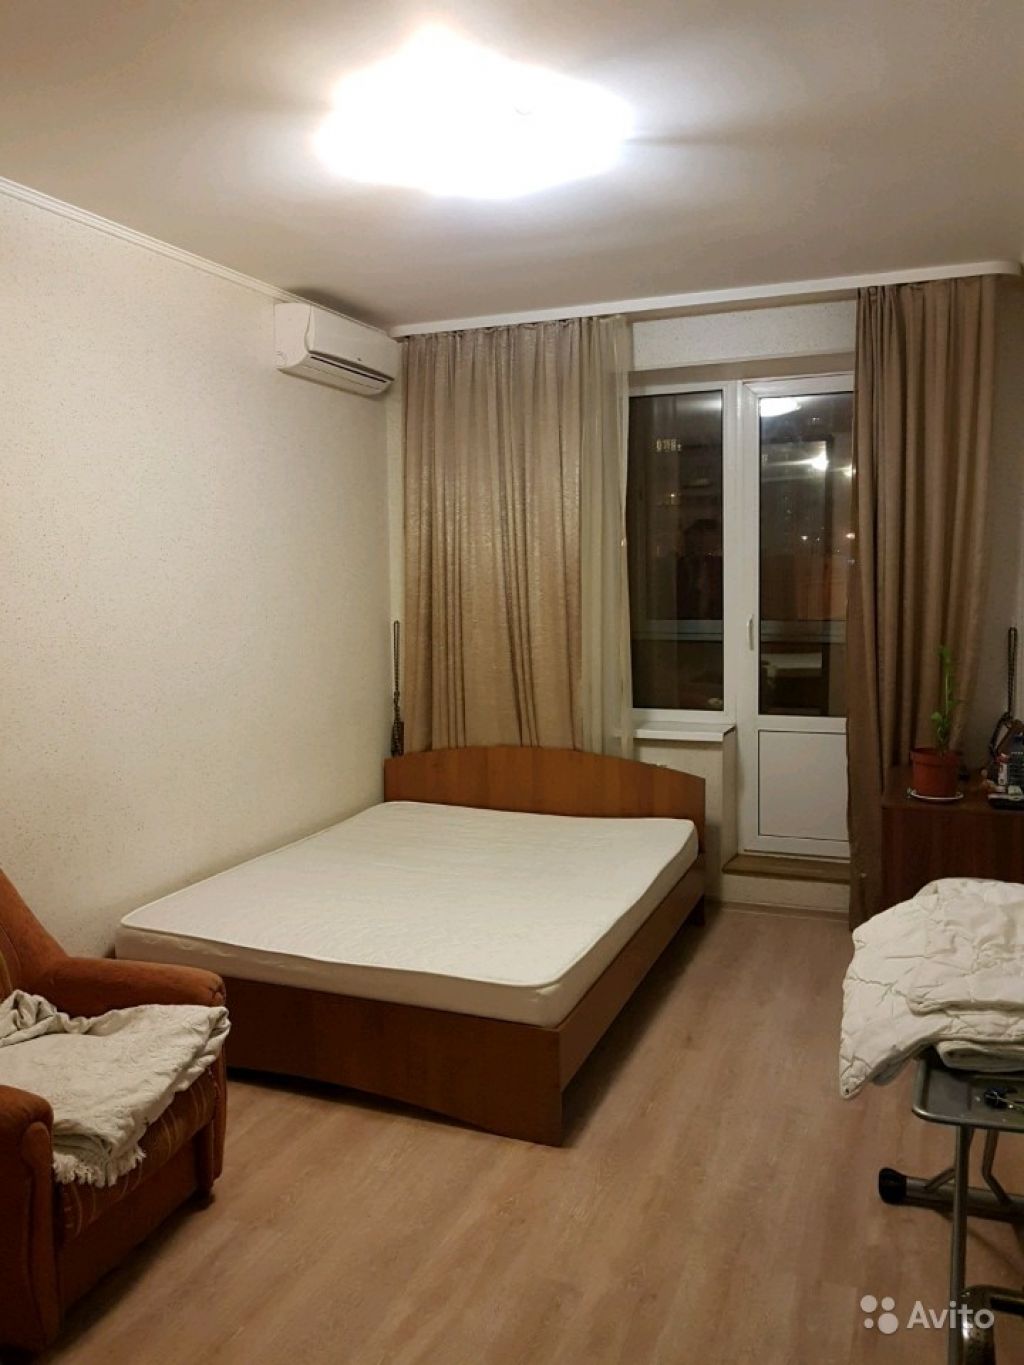 Сдам комнату Комната 17 м² в 1-к квартире на 3 этаже 24-этажного монолитного дома в Москве. Фото 1